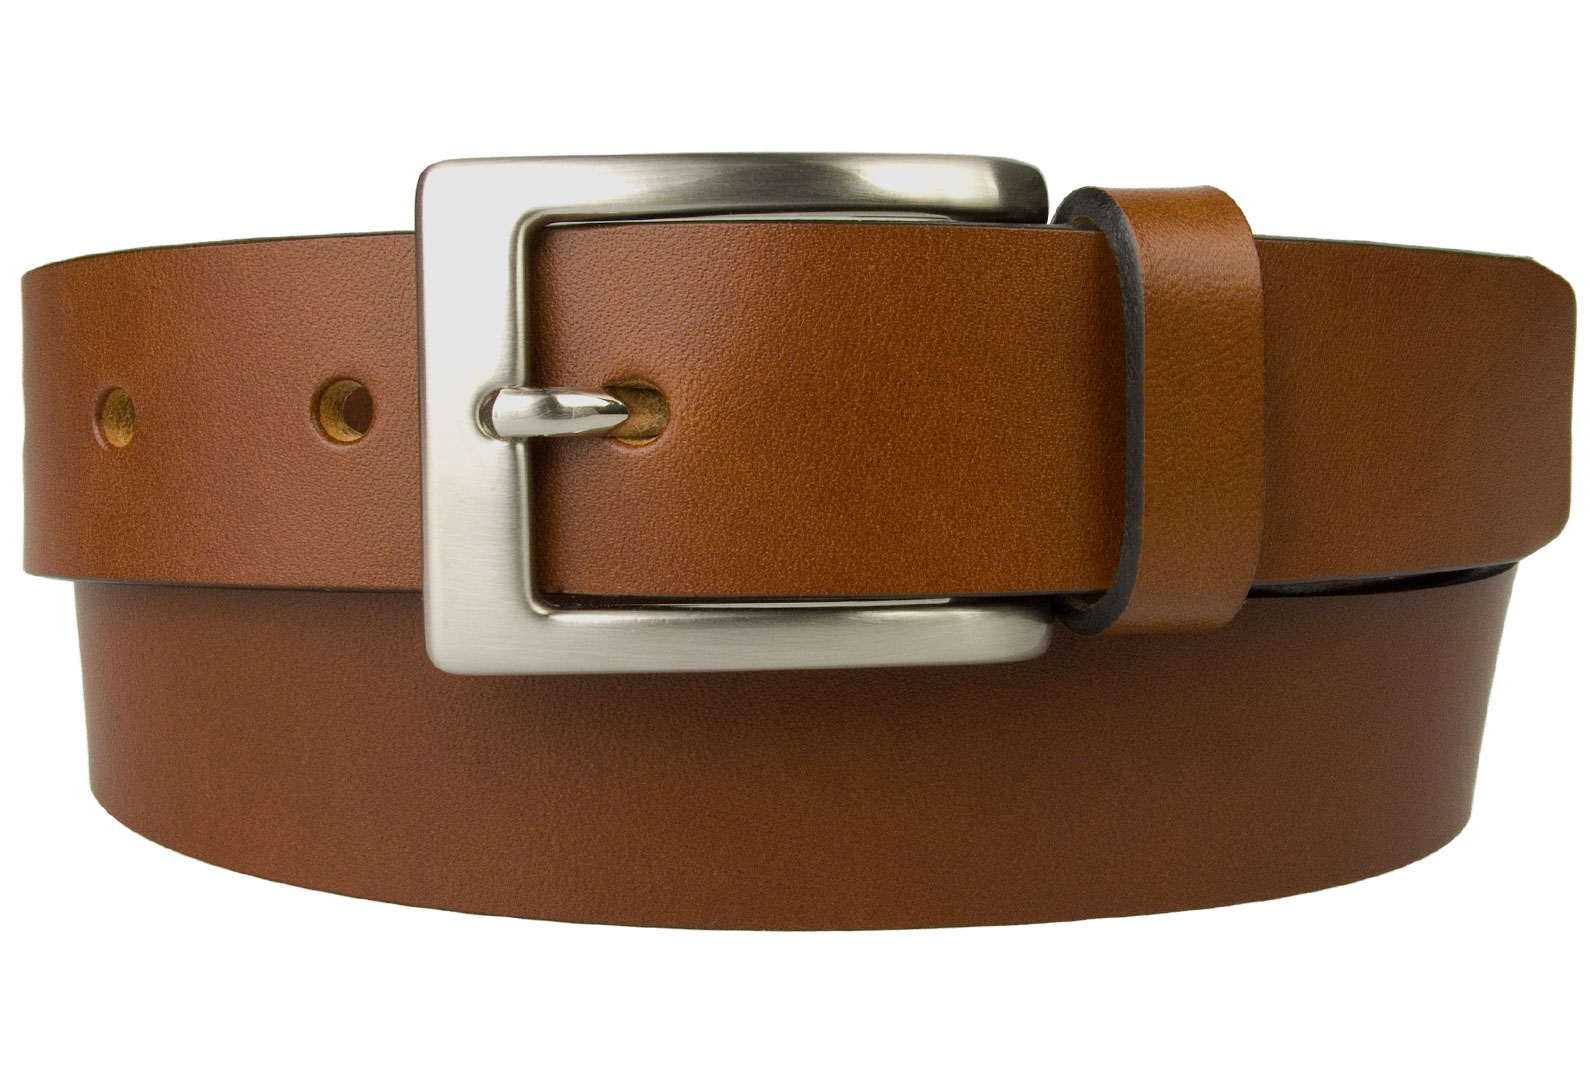 Tan Leather Belt UK Made 1 3/16 inch Wide - BELT DESIGNS